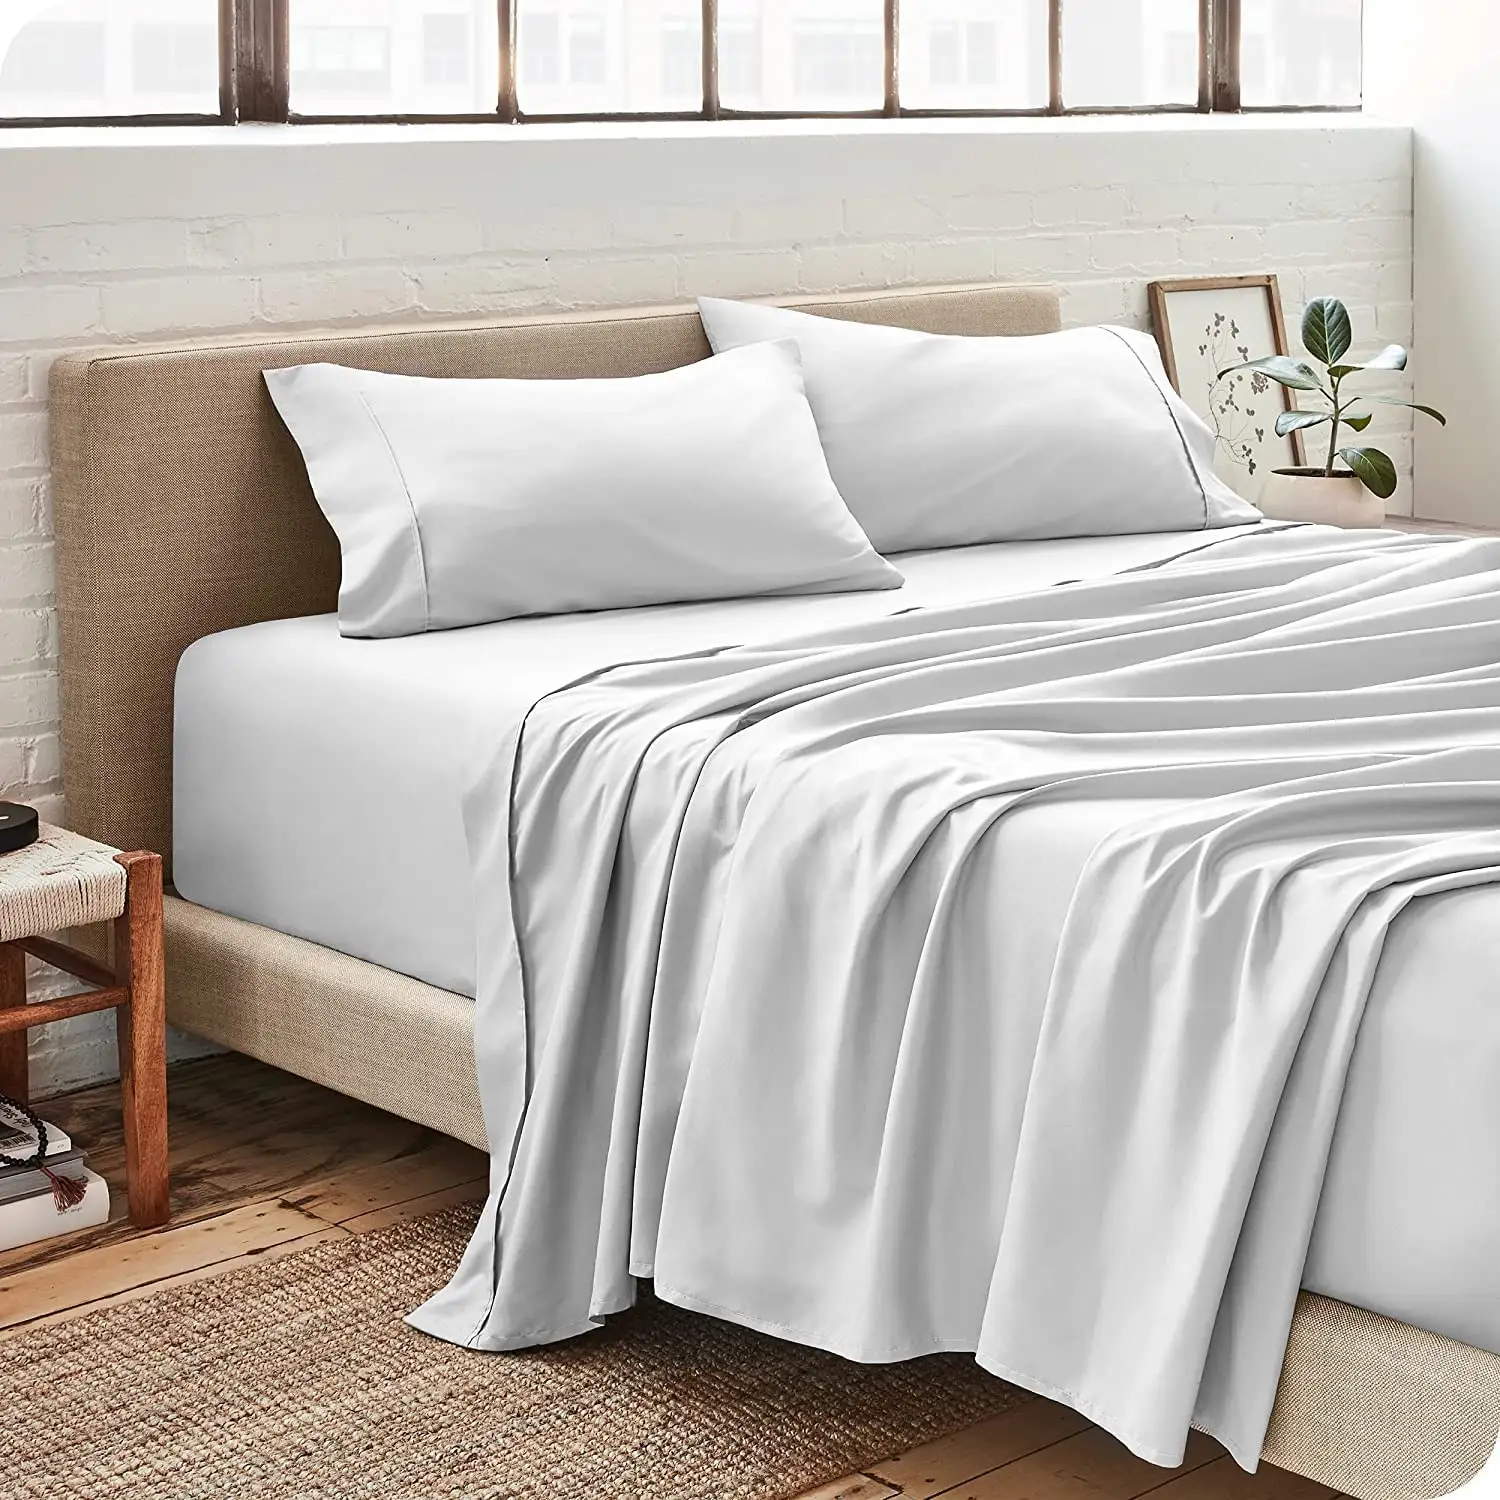 Jogo de lençol, conjunto de roupa de cama 100% poliéster com 4 peças